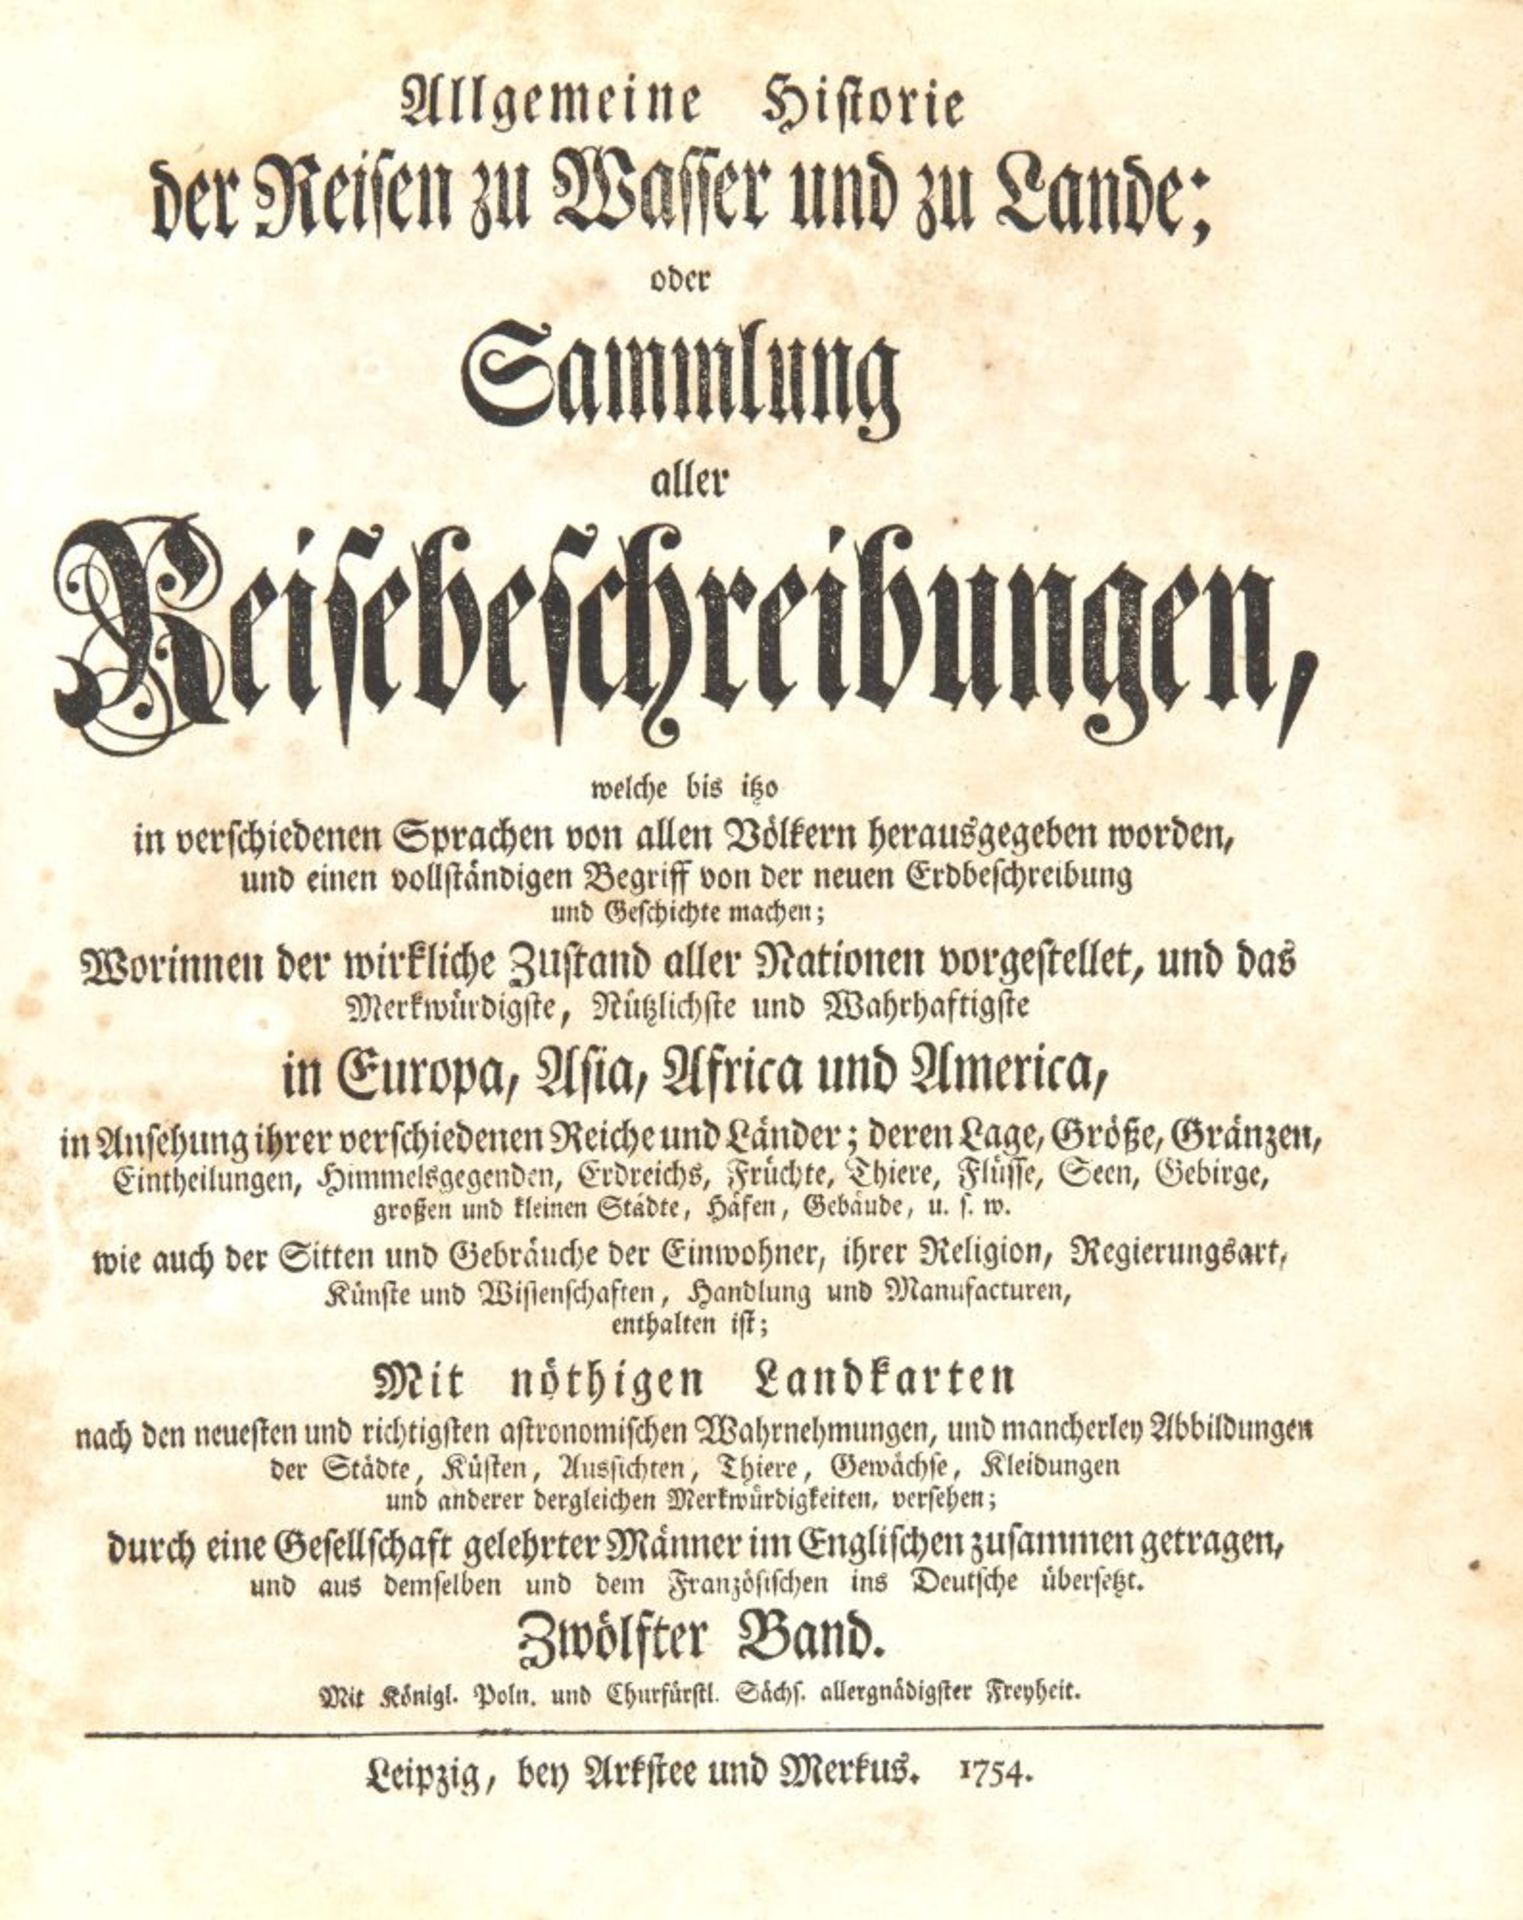 J. J. Schwabe, Reisebeschreibungen, Bd. XII. Lpz 1754. - Image 2 of 4